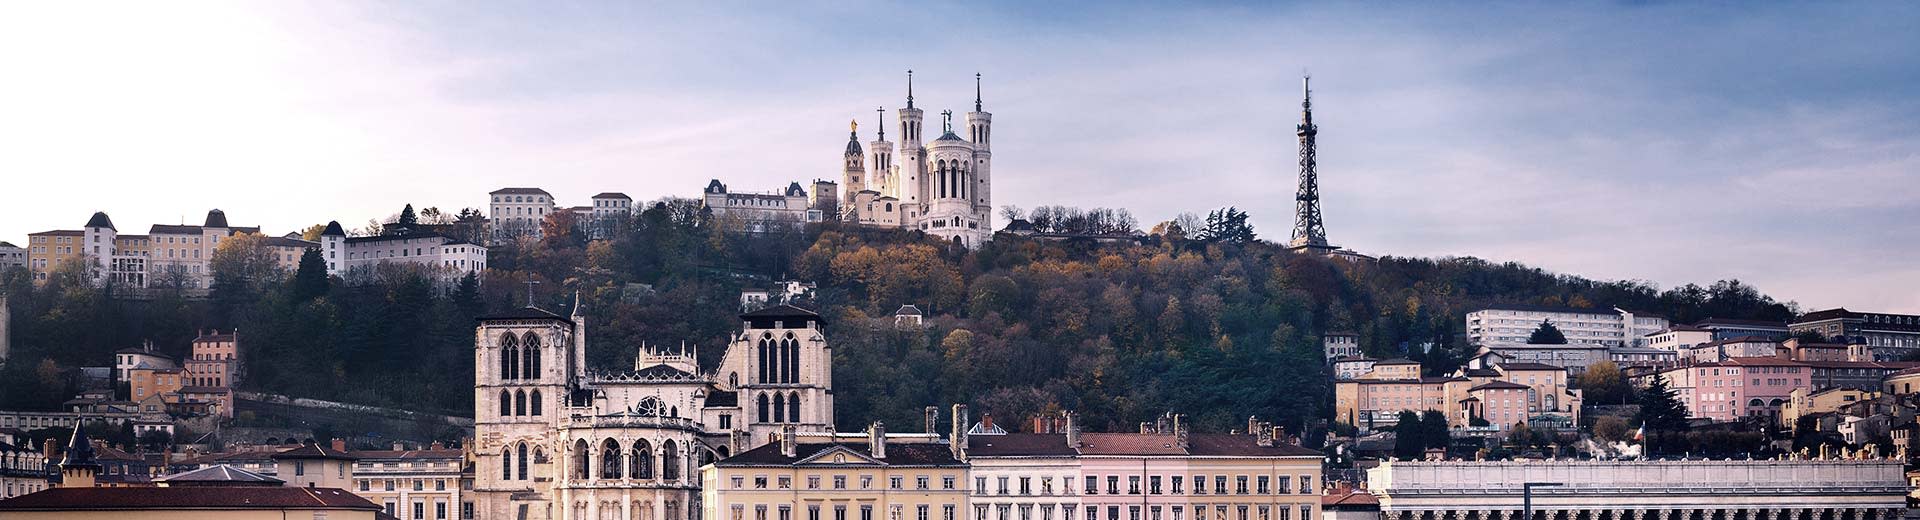 美丽的法国城市里昂上空的教堂尖塔。